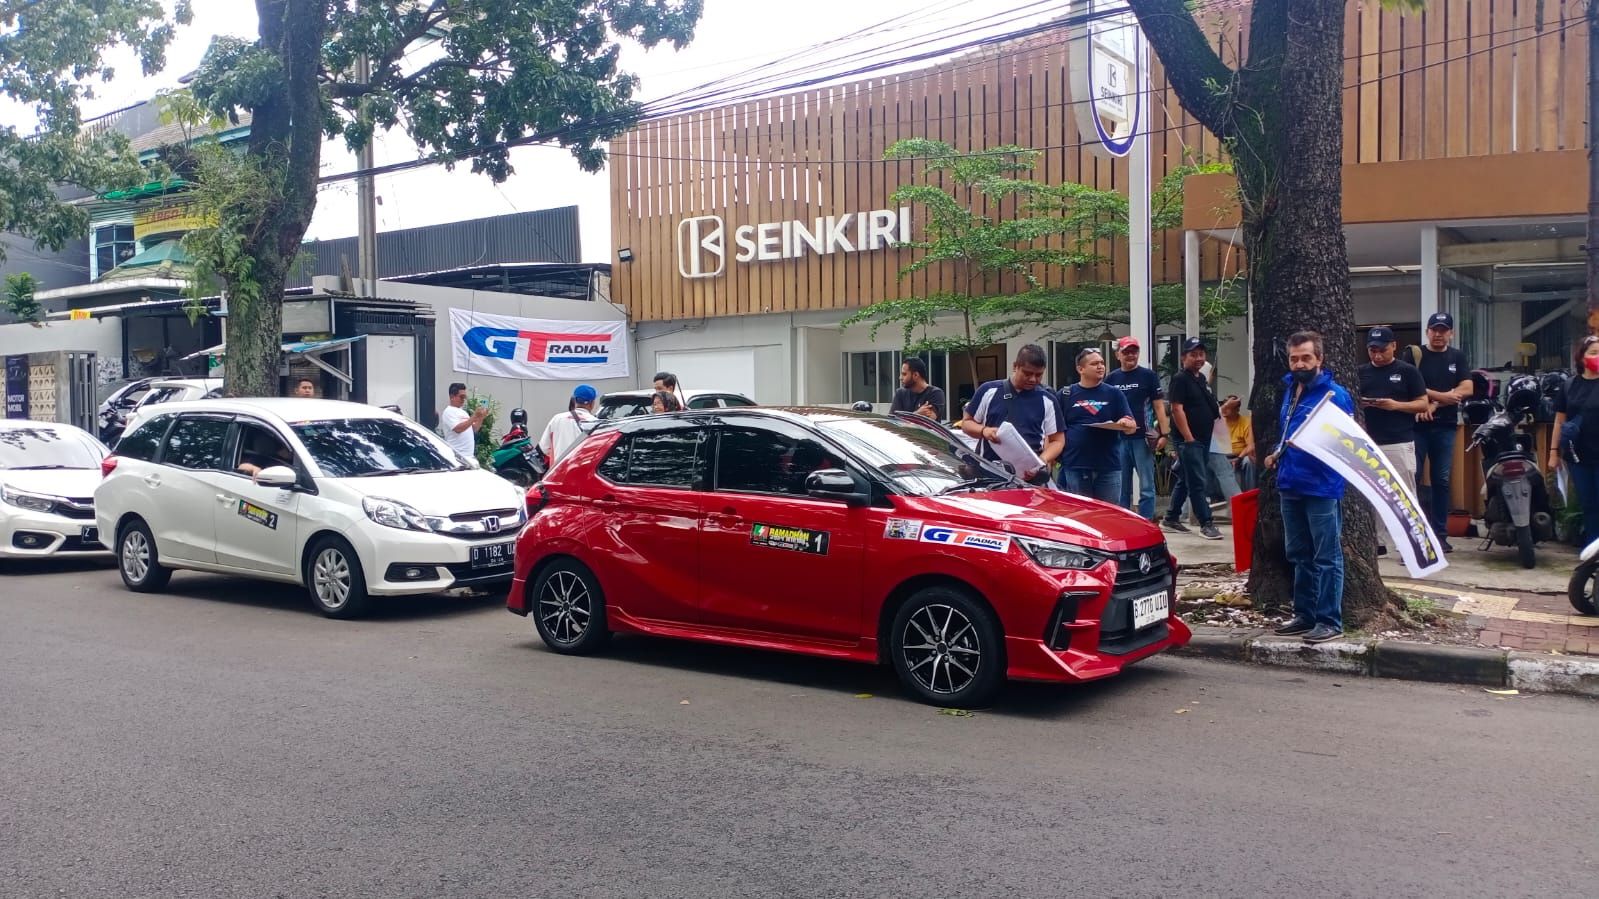 City Rally merupakan kegiatan olahraga otomotif yang dalam satu dasawarsa ini sangat digemari di Kota Bandung.*/ 